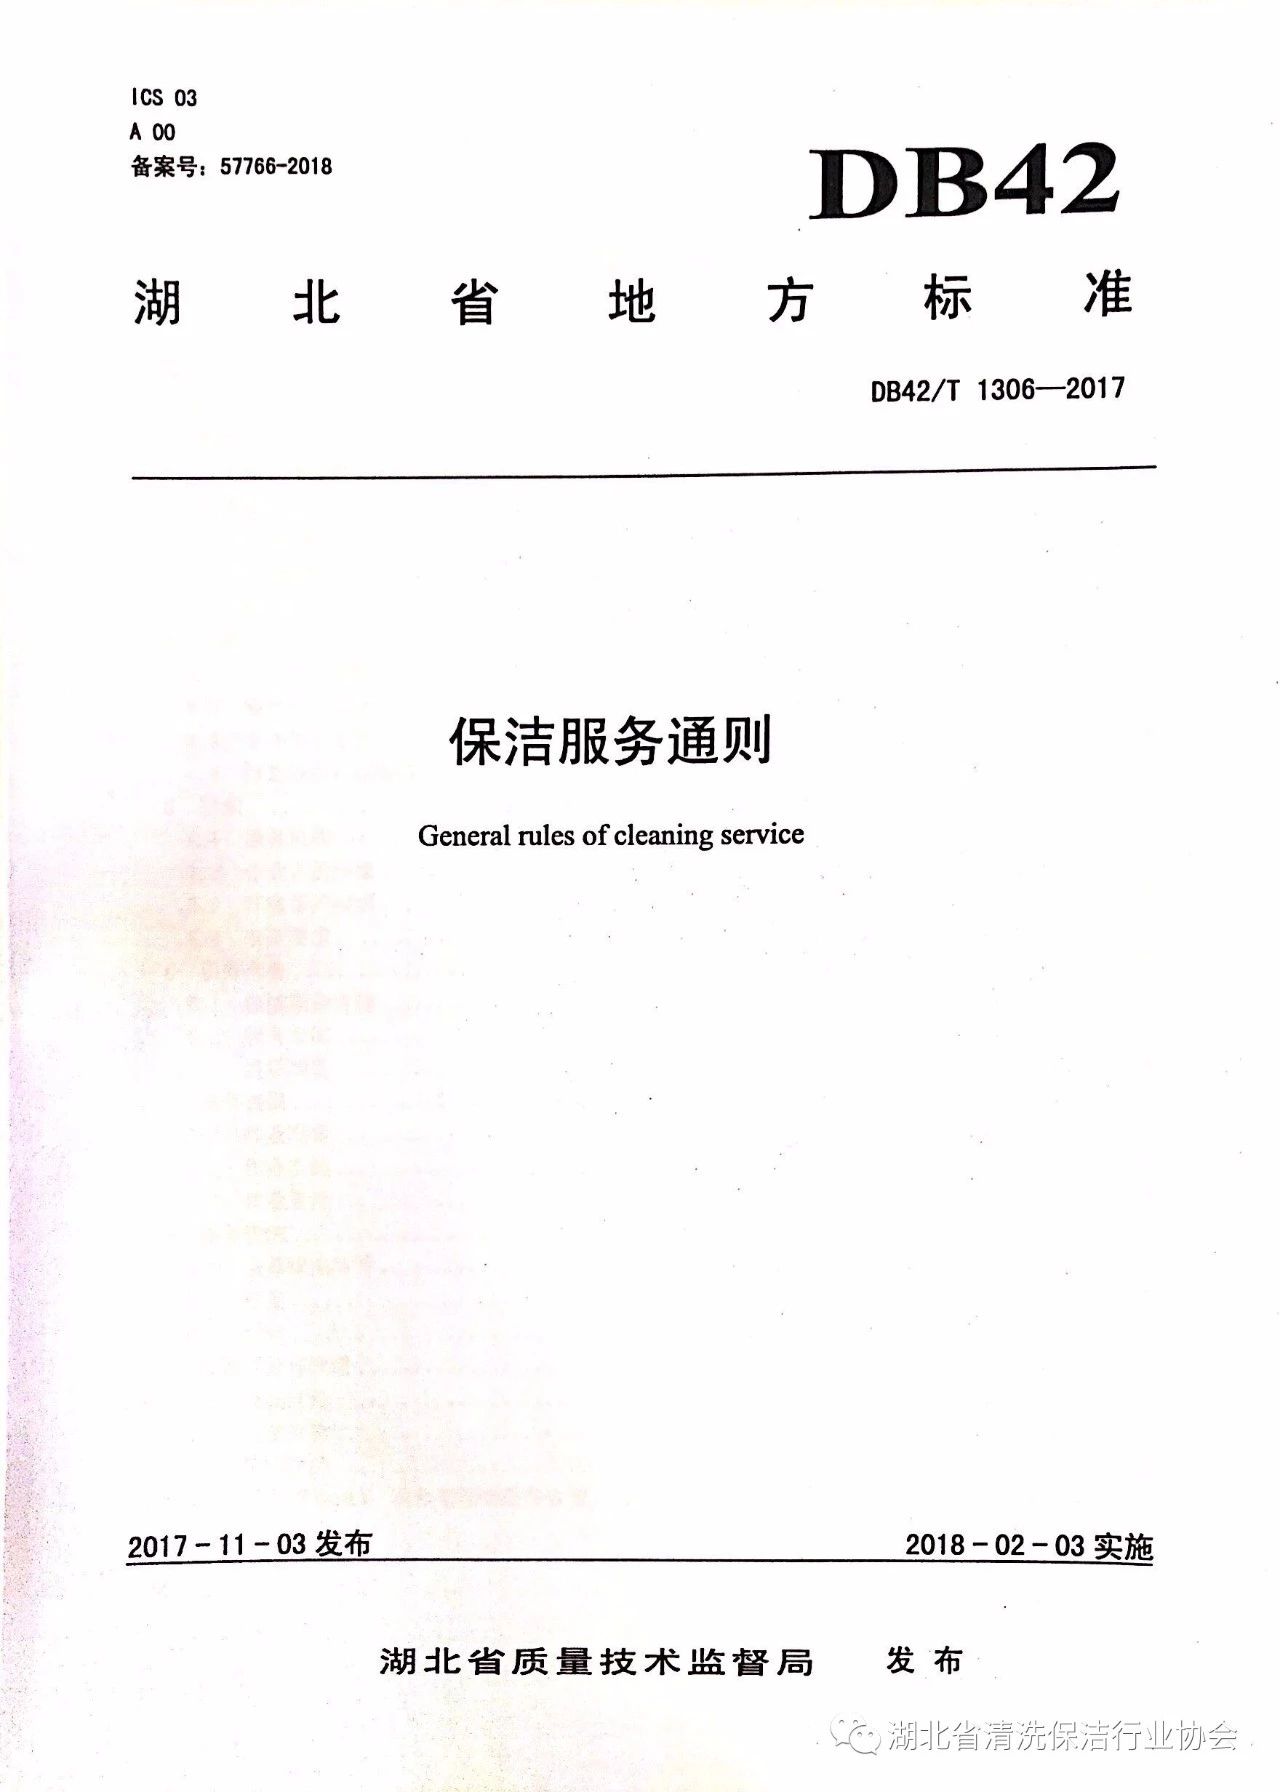 湖北省清洗保洁行业协会第一部地方标准《保洁服务通则》颁布实施.jpg